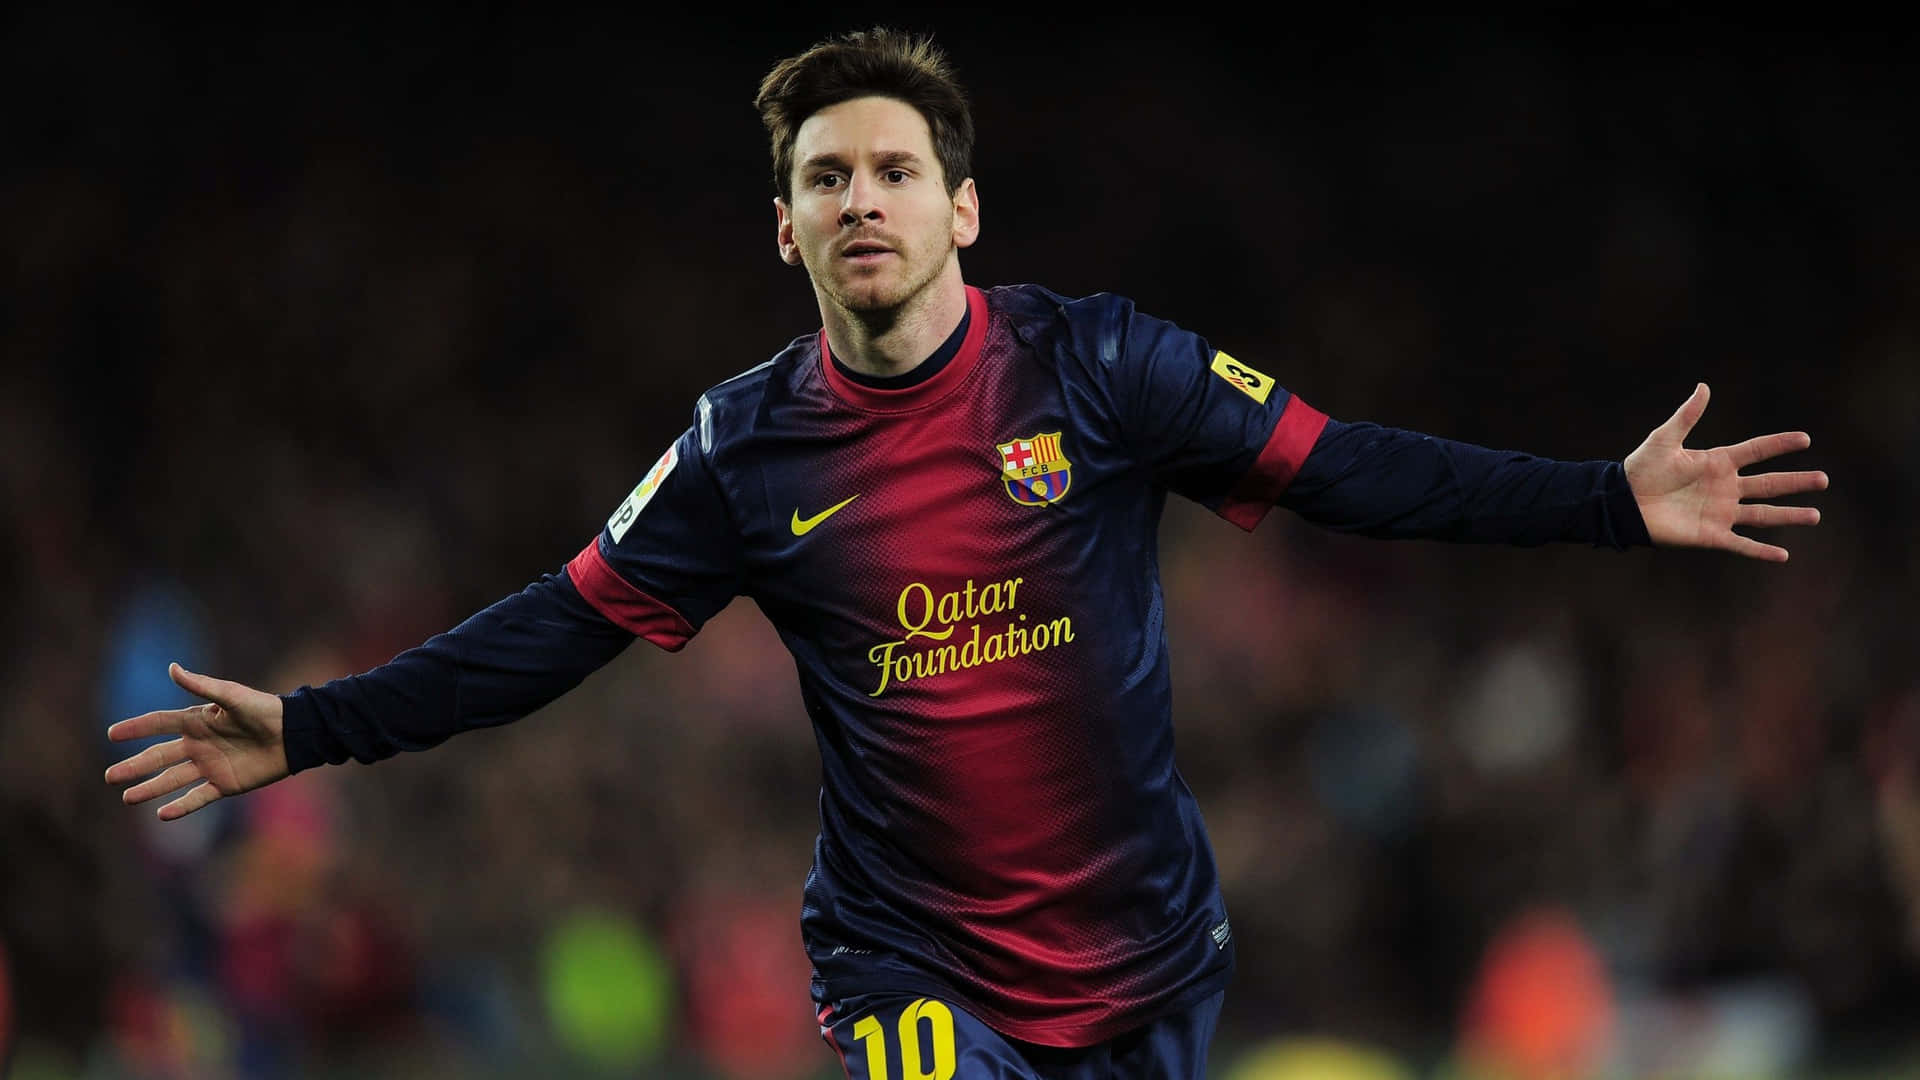 Einseltener Cooler Schnappschuss Von Lionel Messi Während Des Spiels. Wallpaper